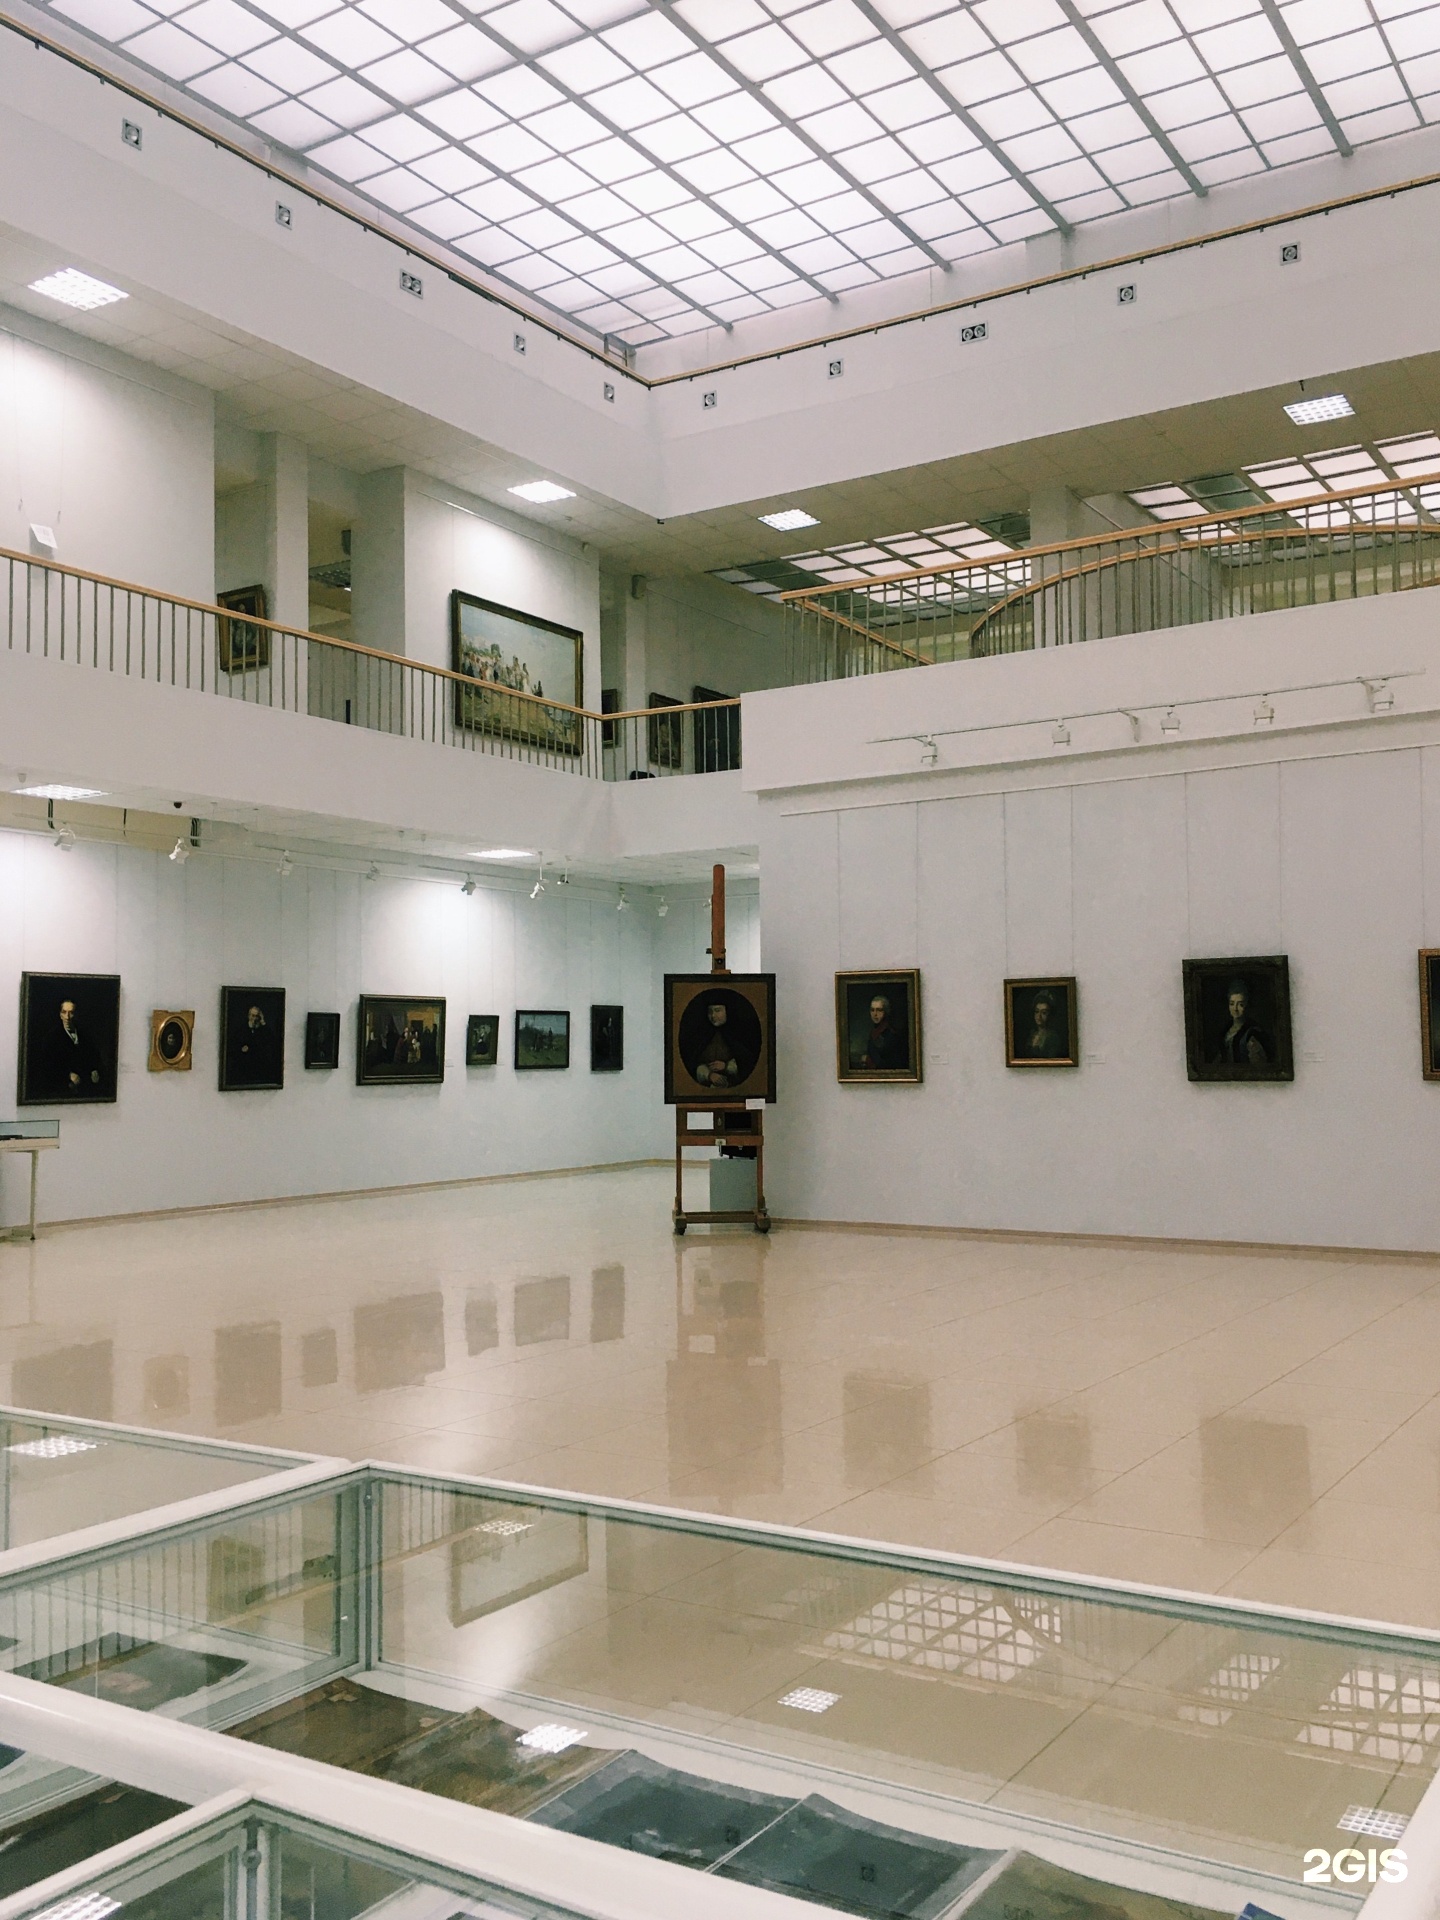 художественный музей чебоксары